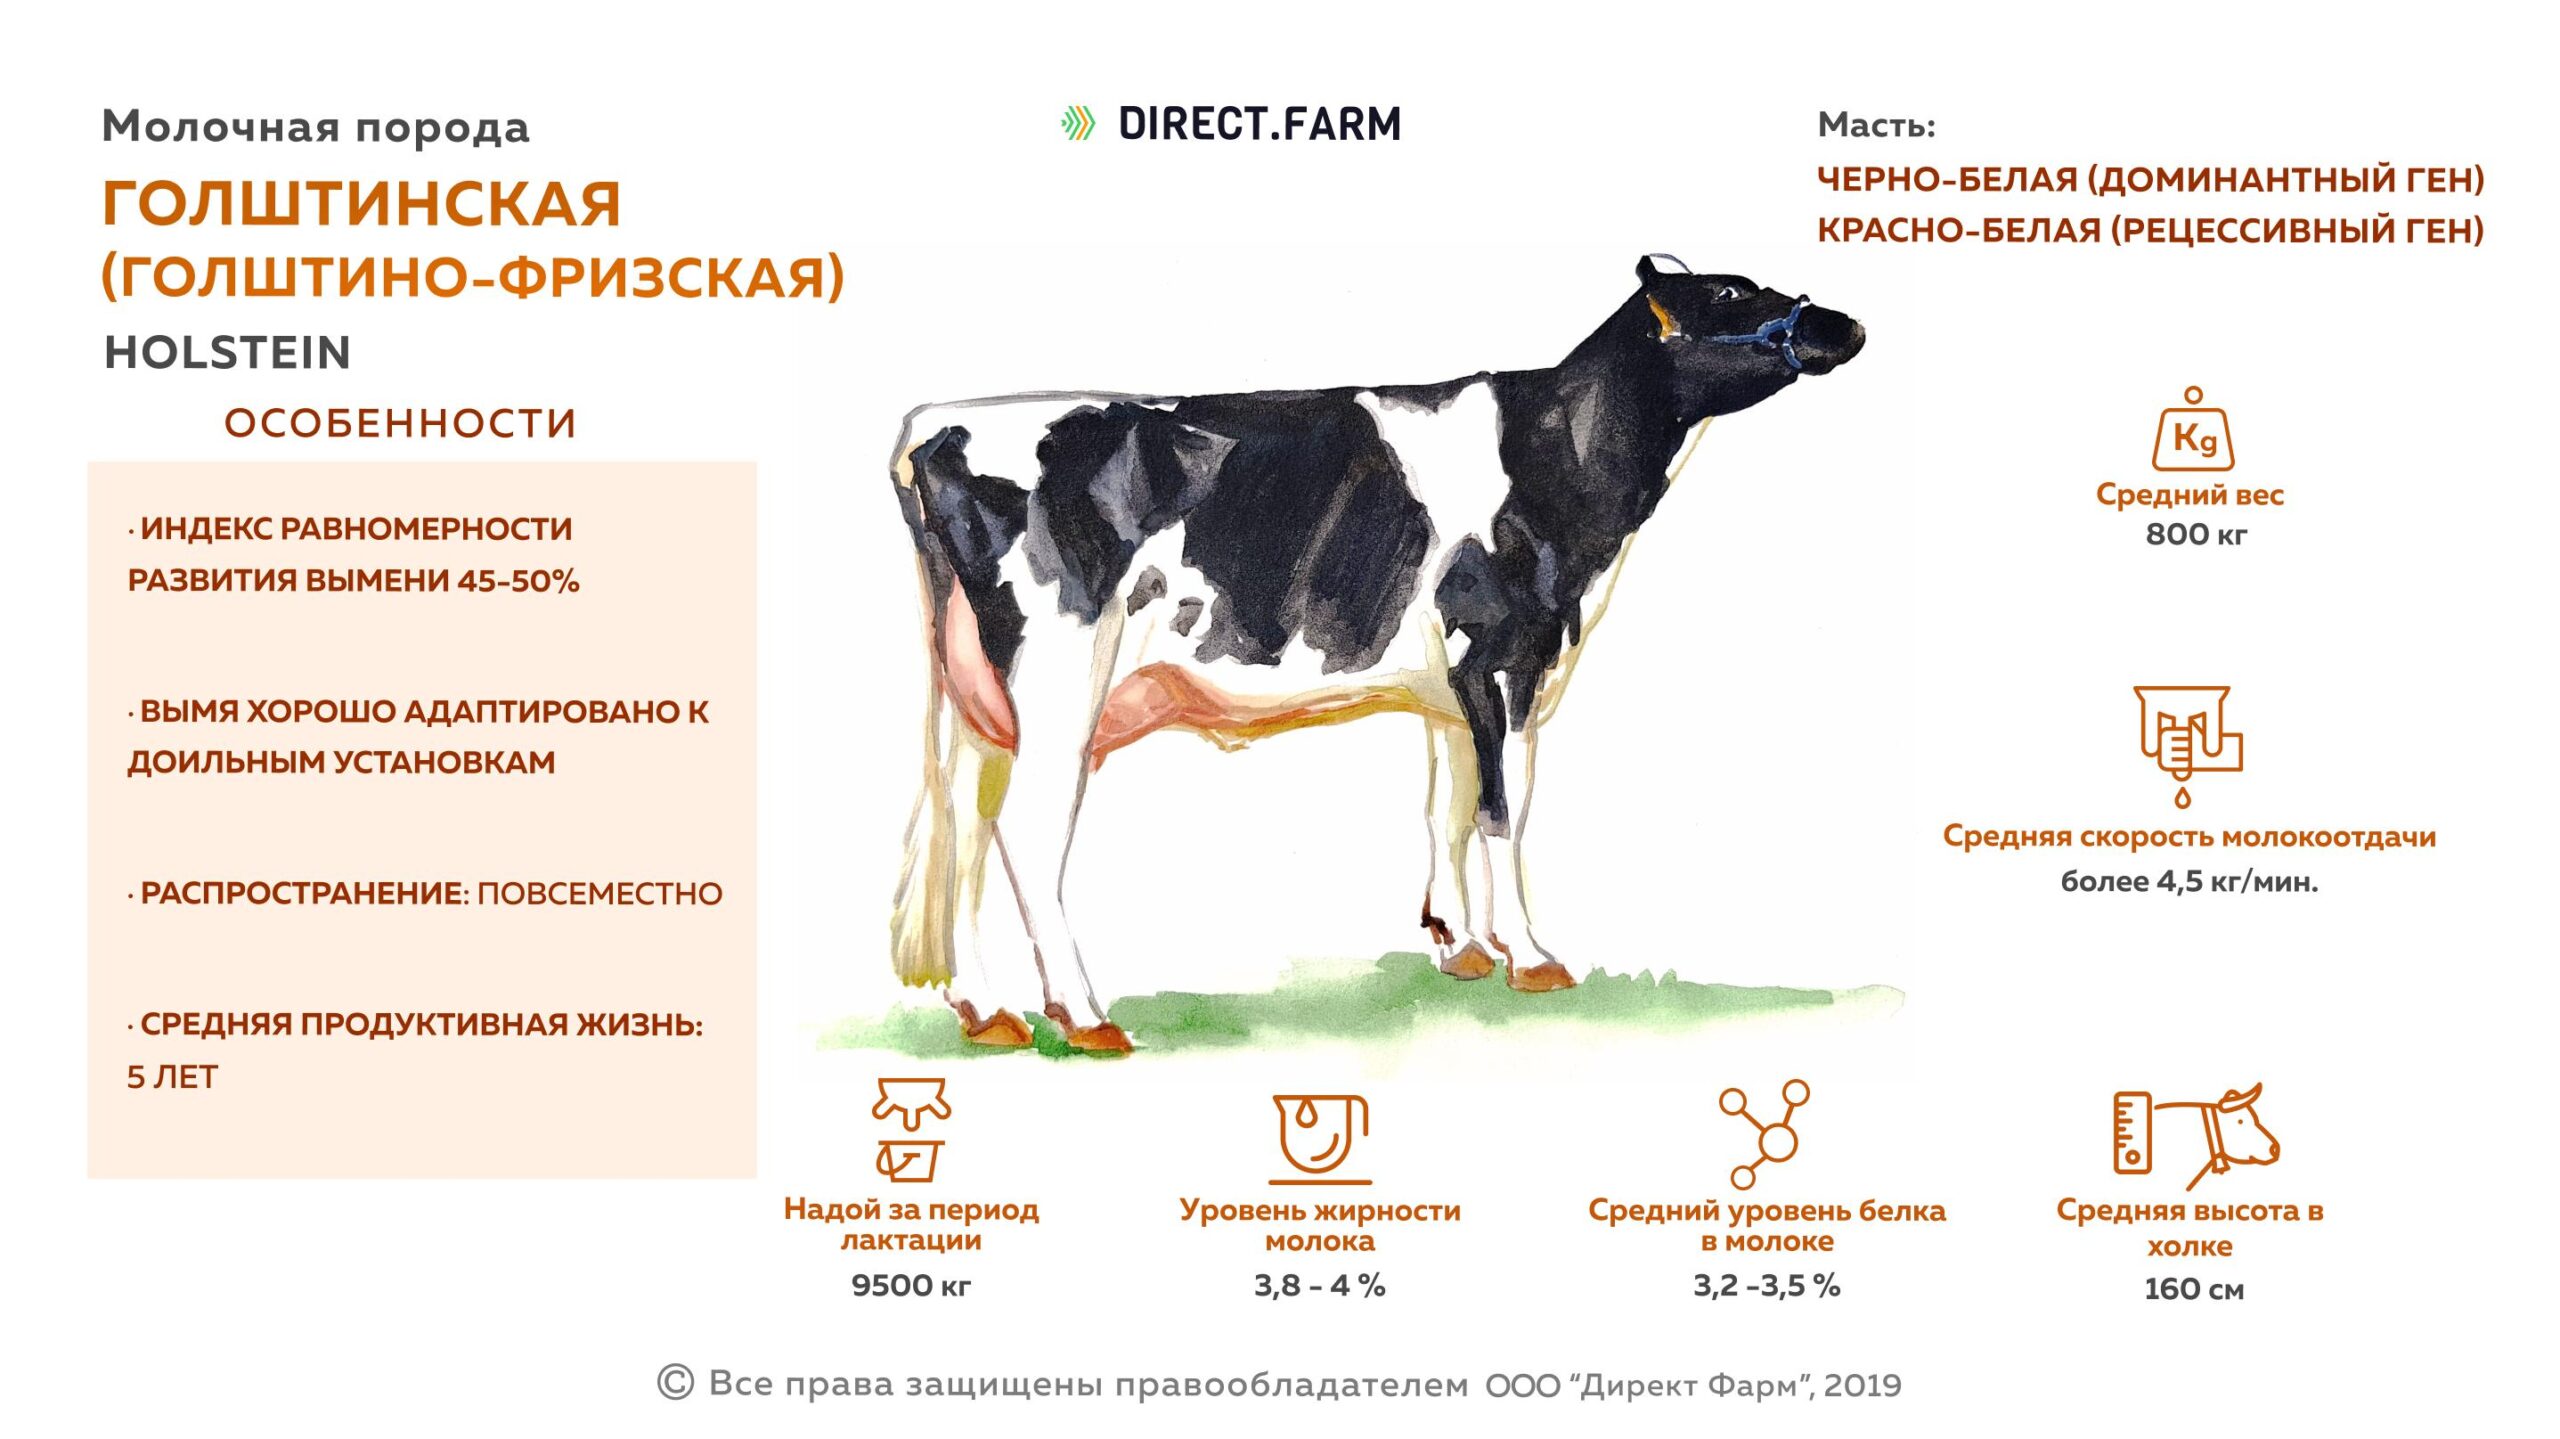 Крупный рогатый скот лохани: характеристики, использование и информация о полной породе